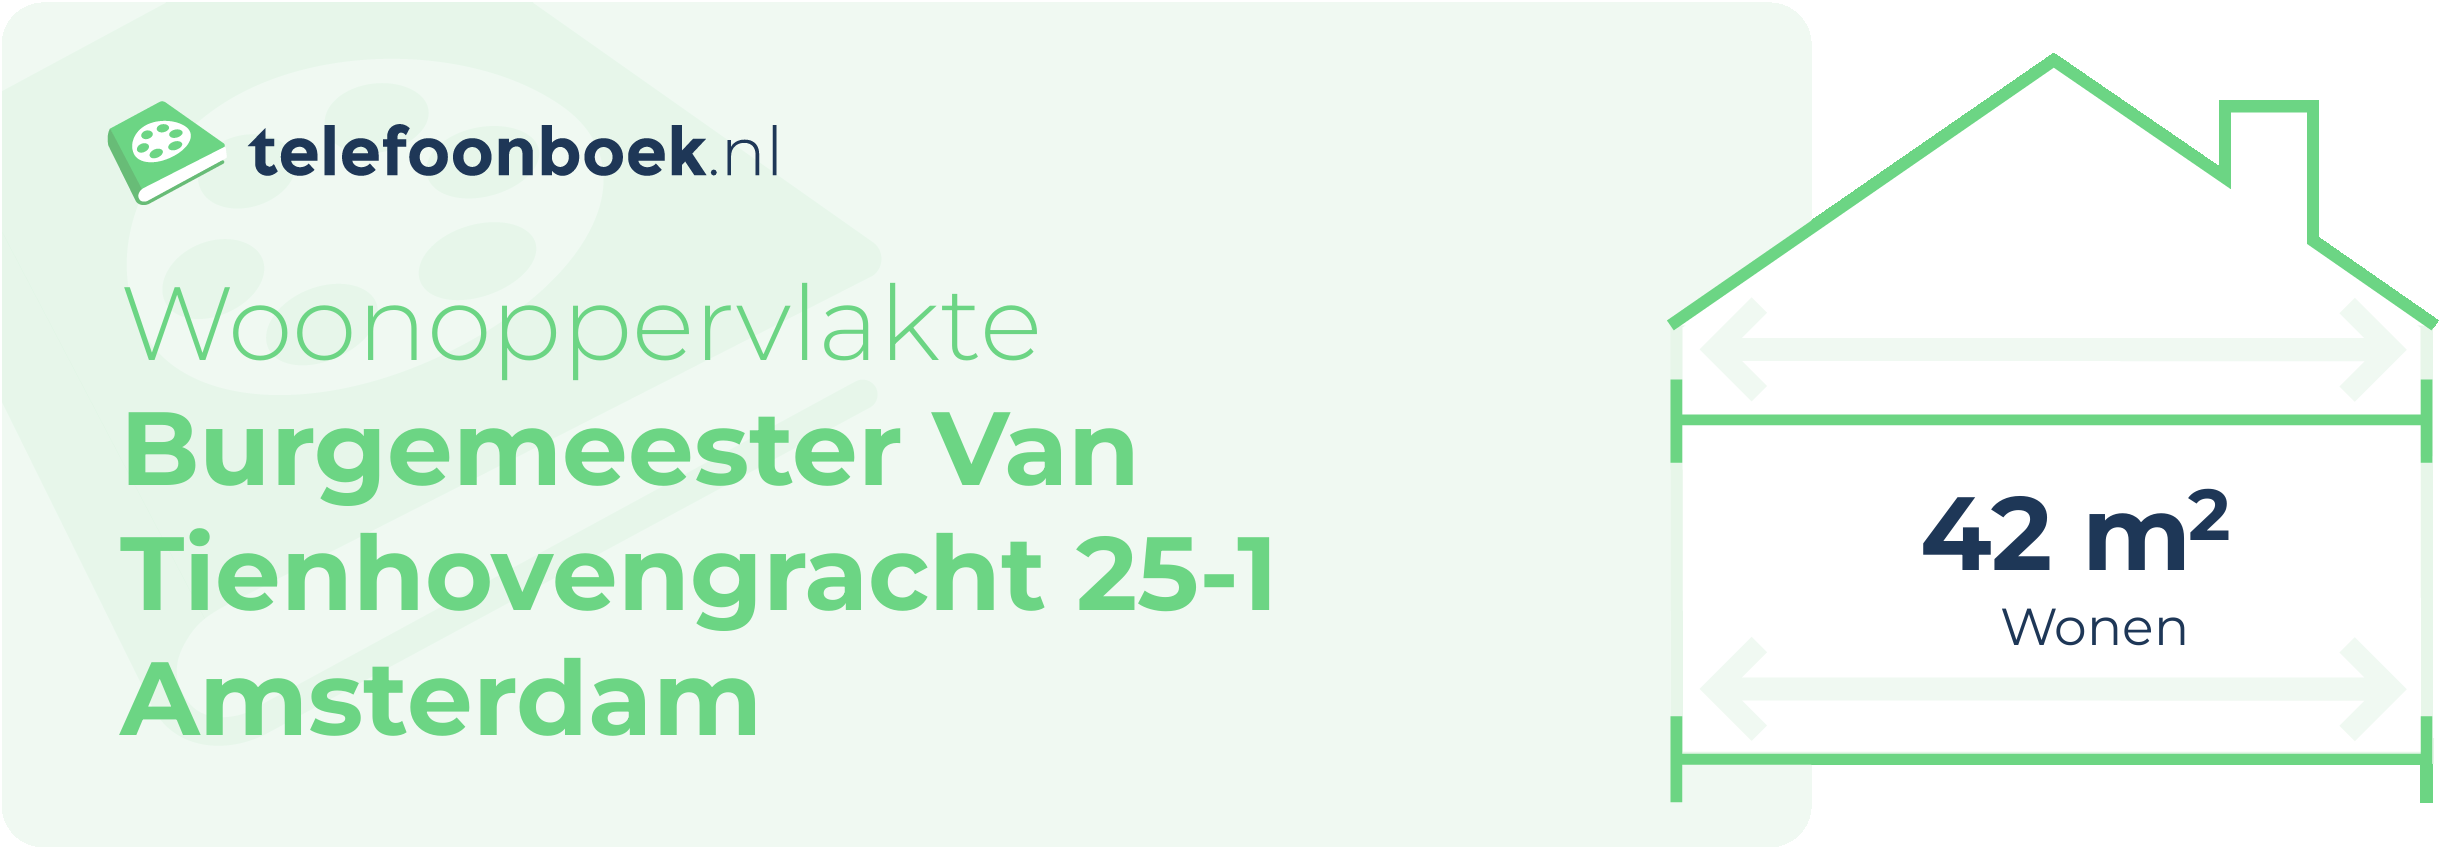 Woonoppervlakte Burgemeester Van Tienhovengracht 25-1 Amsterdam